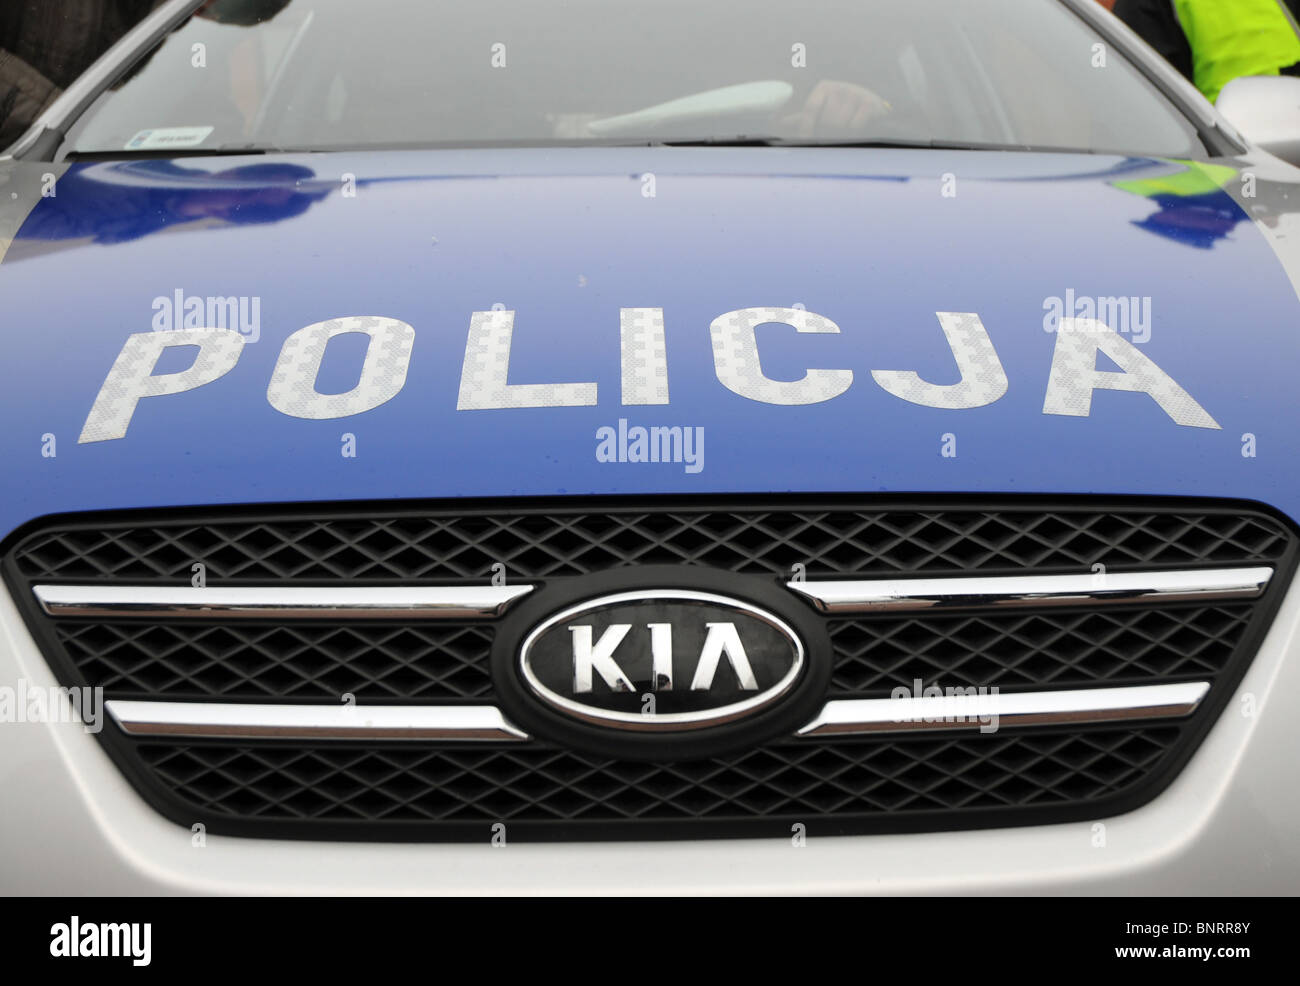 Kia Cee'd police car in Warsaw, Poland Stock Photo - Alamy